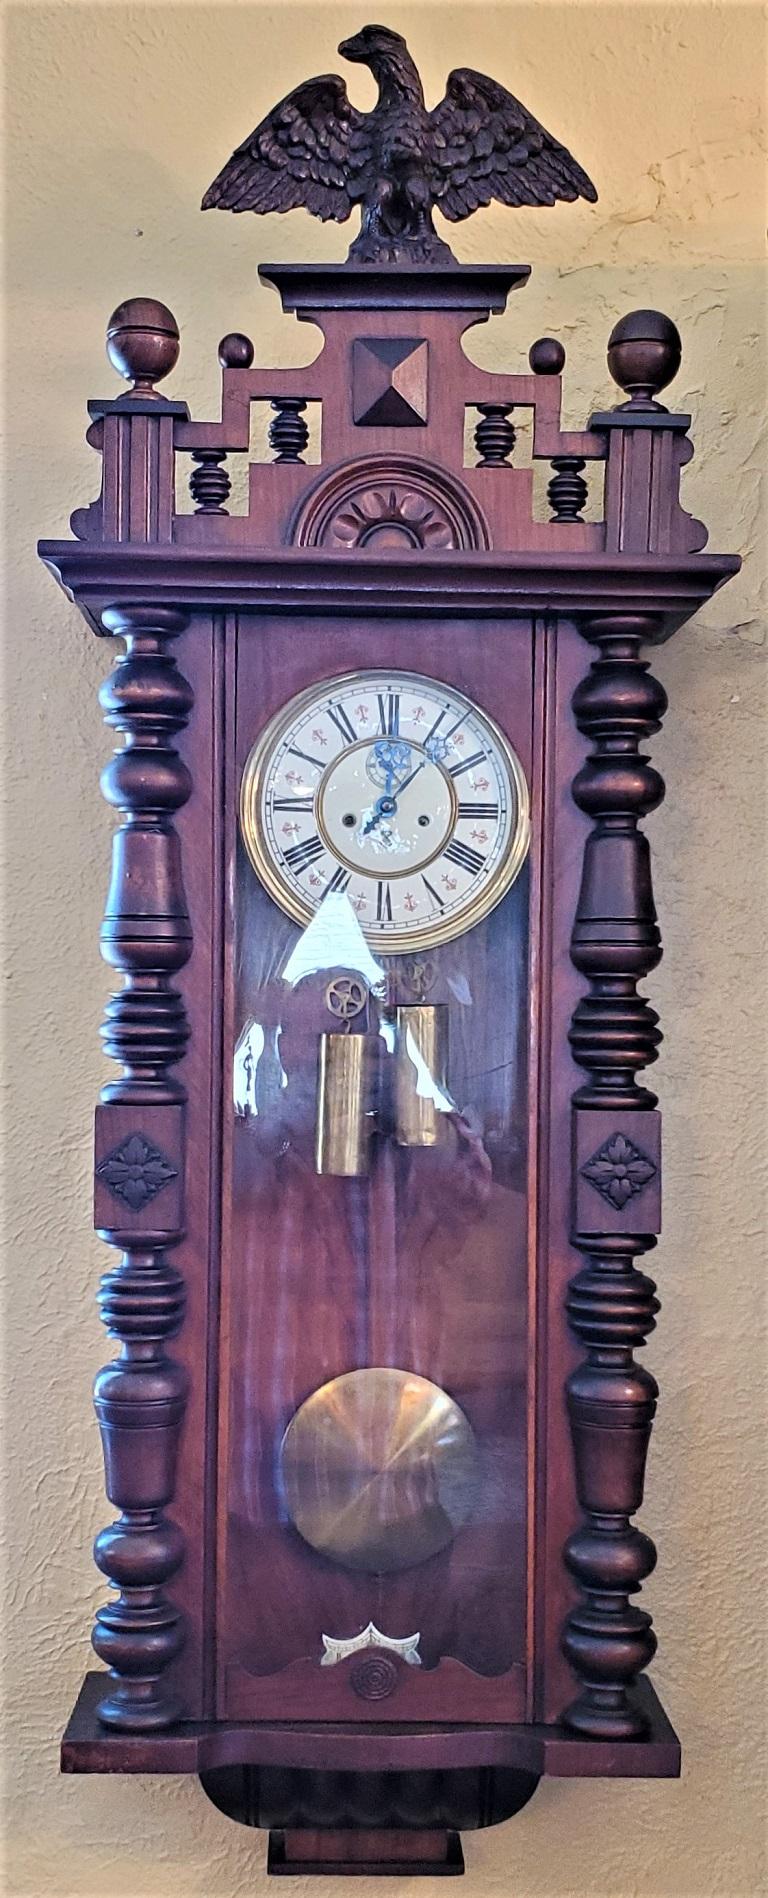 PRÄSENTIEREN SIE EINE HERRLICHE 19C Gustav Becker Wien Wanduhr.

Hergestellt von dem berühmten Uhrmacher Gustav Becker um 1880 in Deutschland.

Die Uhr ist in einem guten originalen und unberührten Zustand.

Die abnehmbare Schabracke hat einen Adler